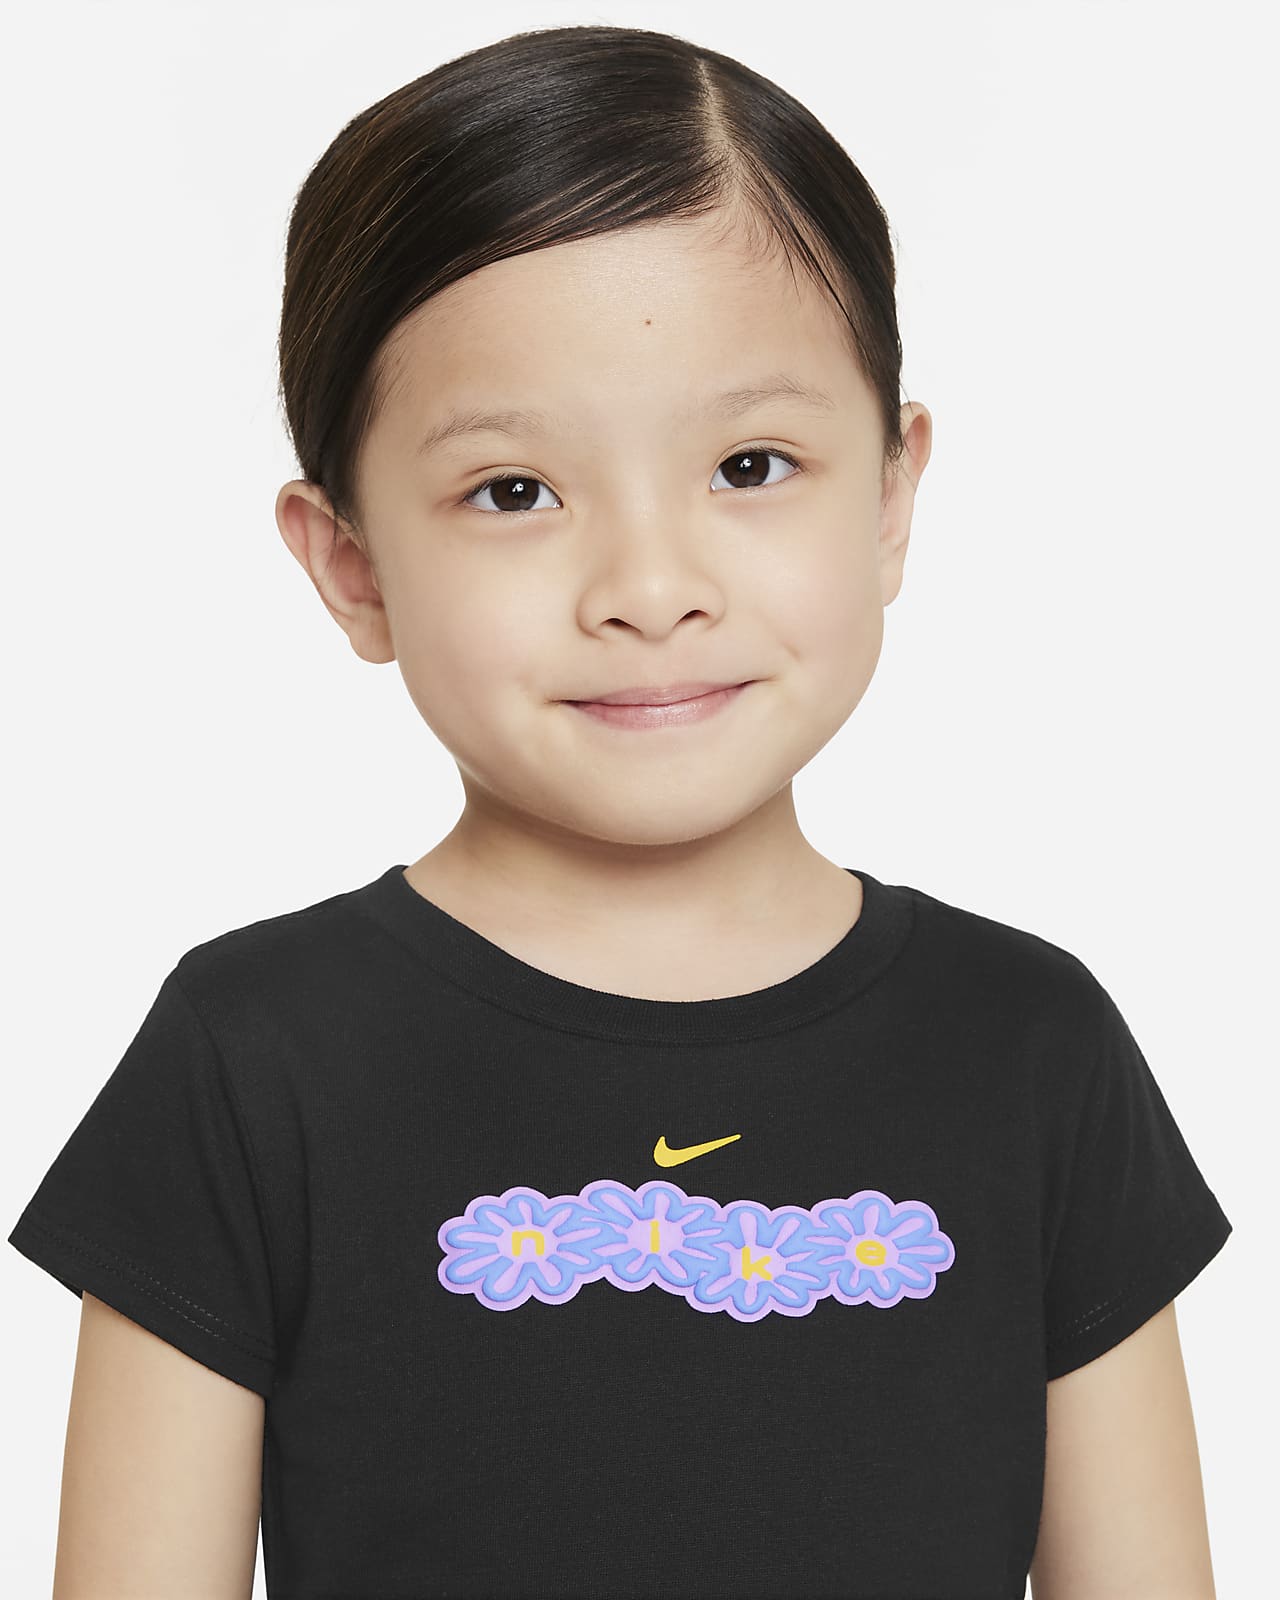 Playera infantil con gráfico de flor Nike.